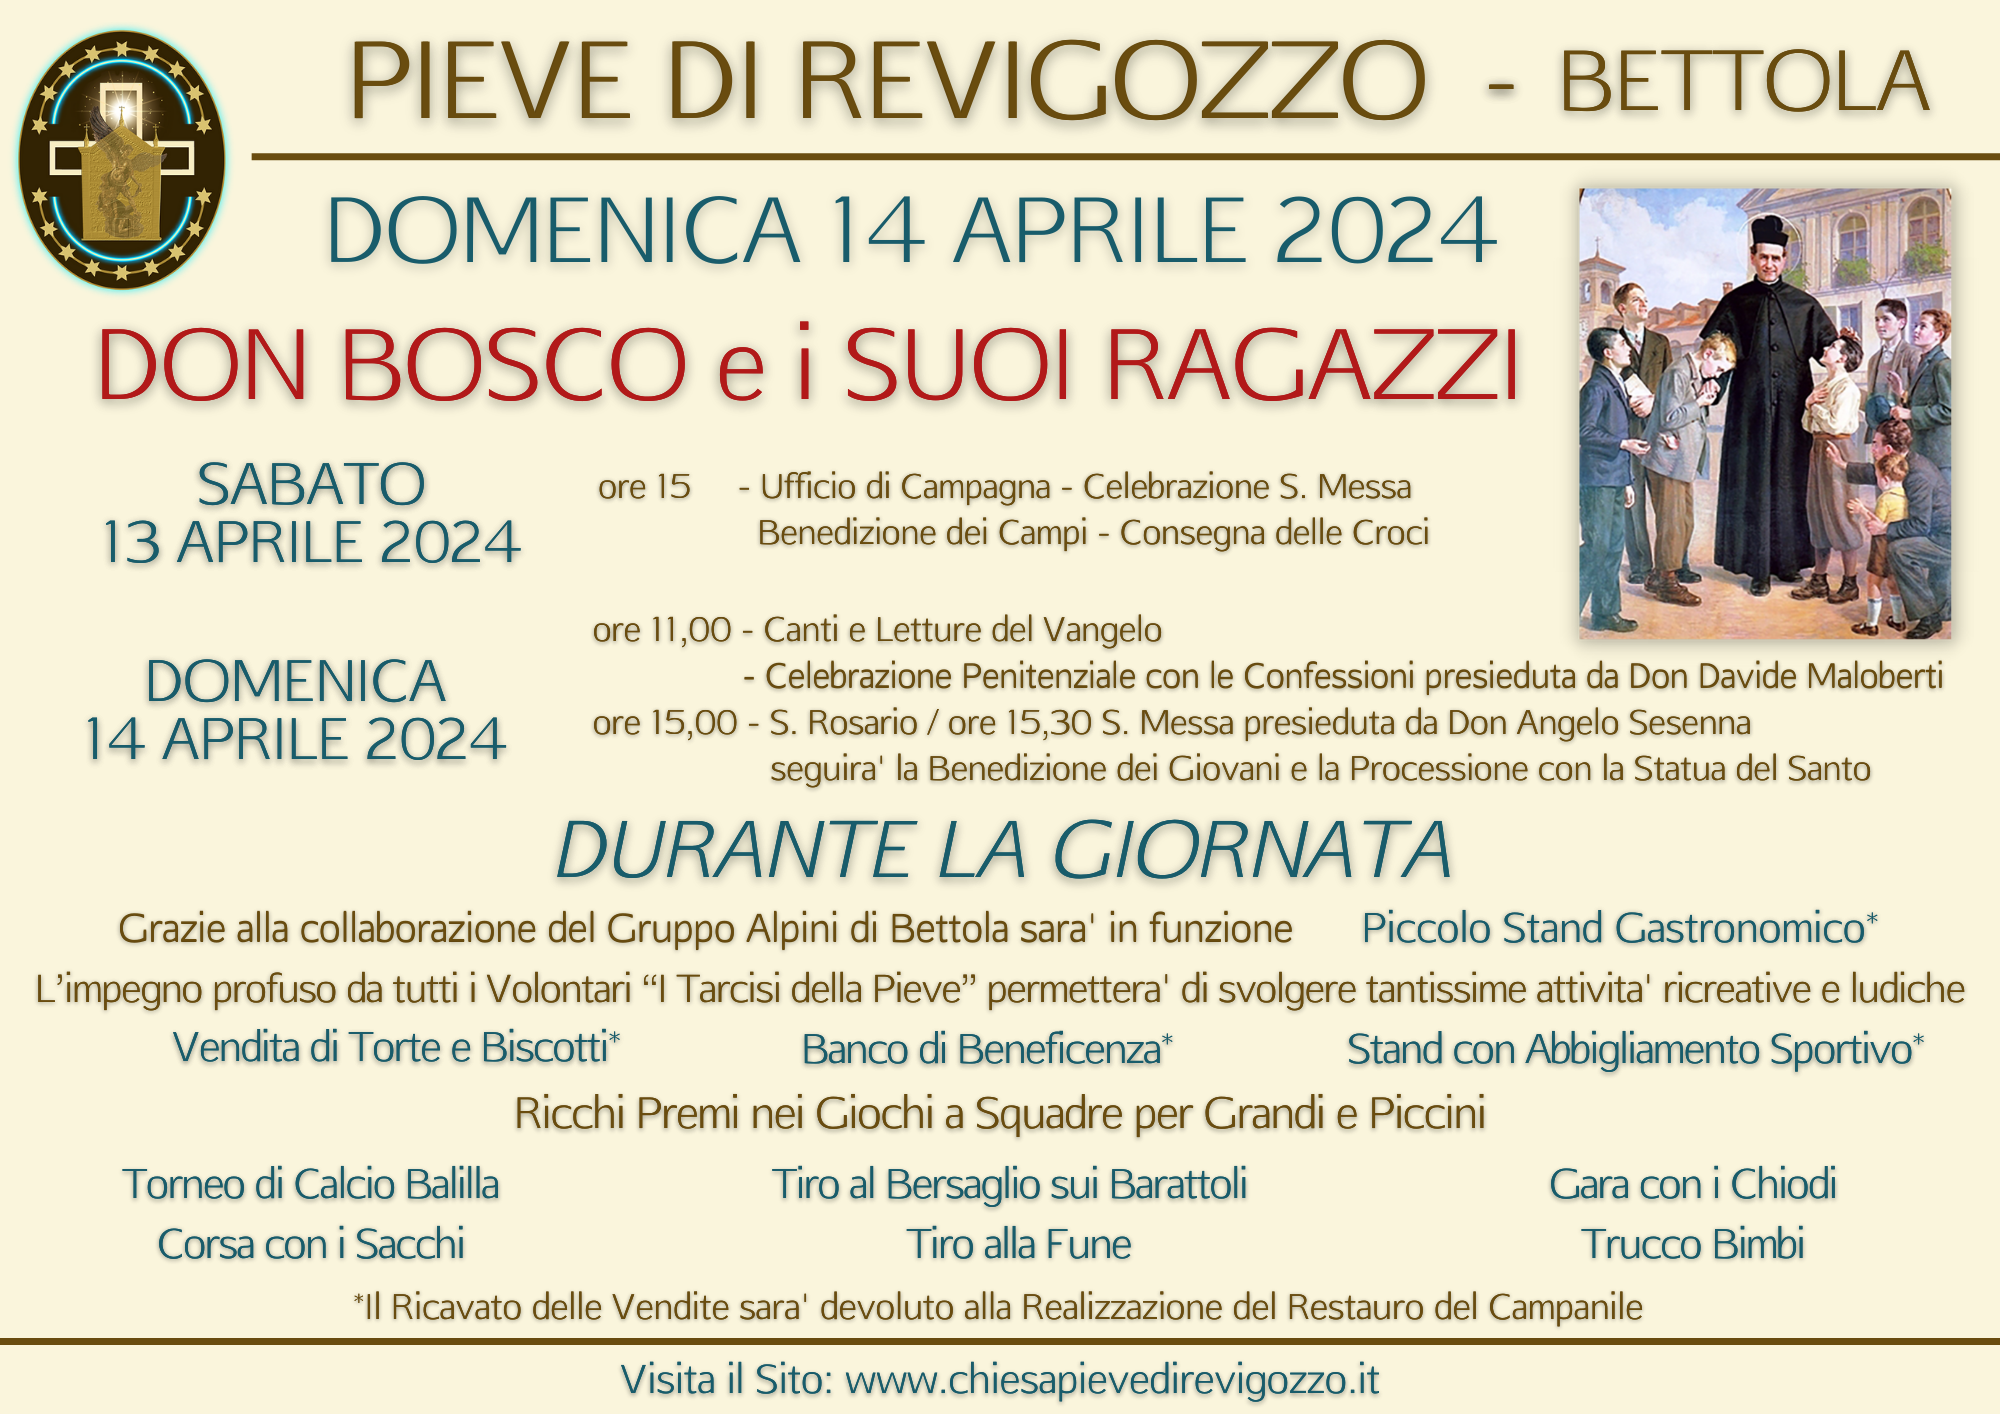 DOMENICA 14 APRILE 2024 - Don Bosco e i suoi Ragazzi